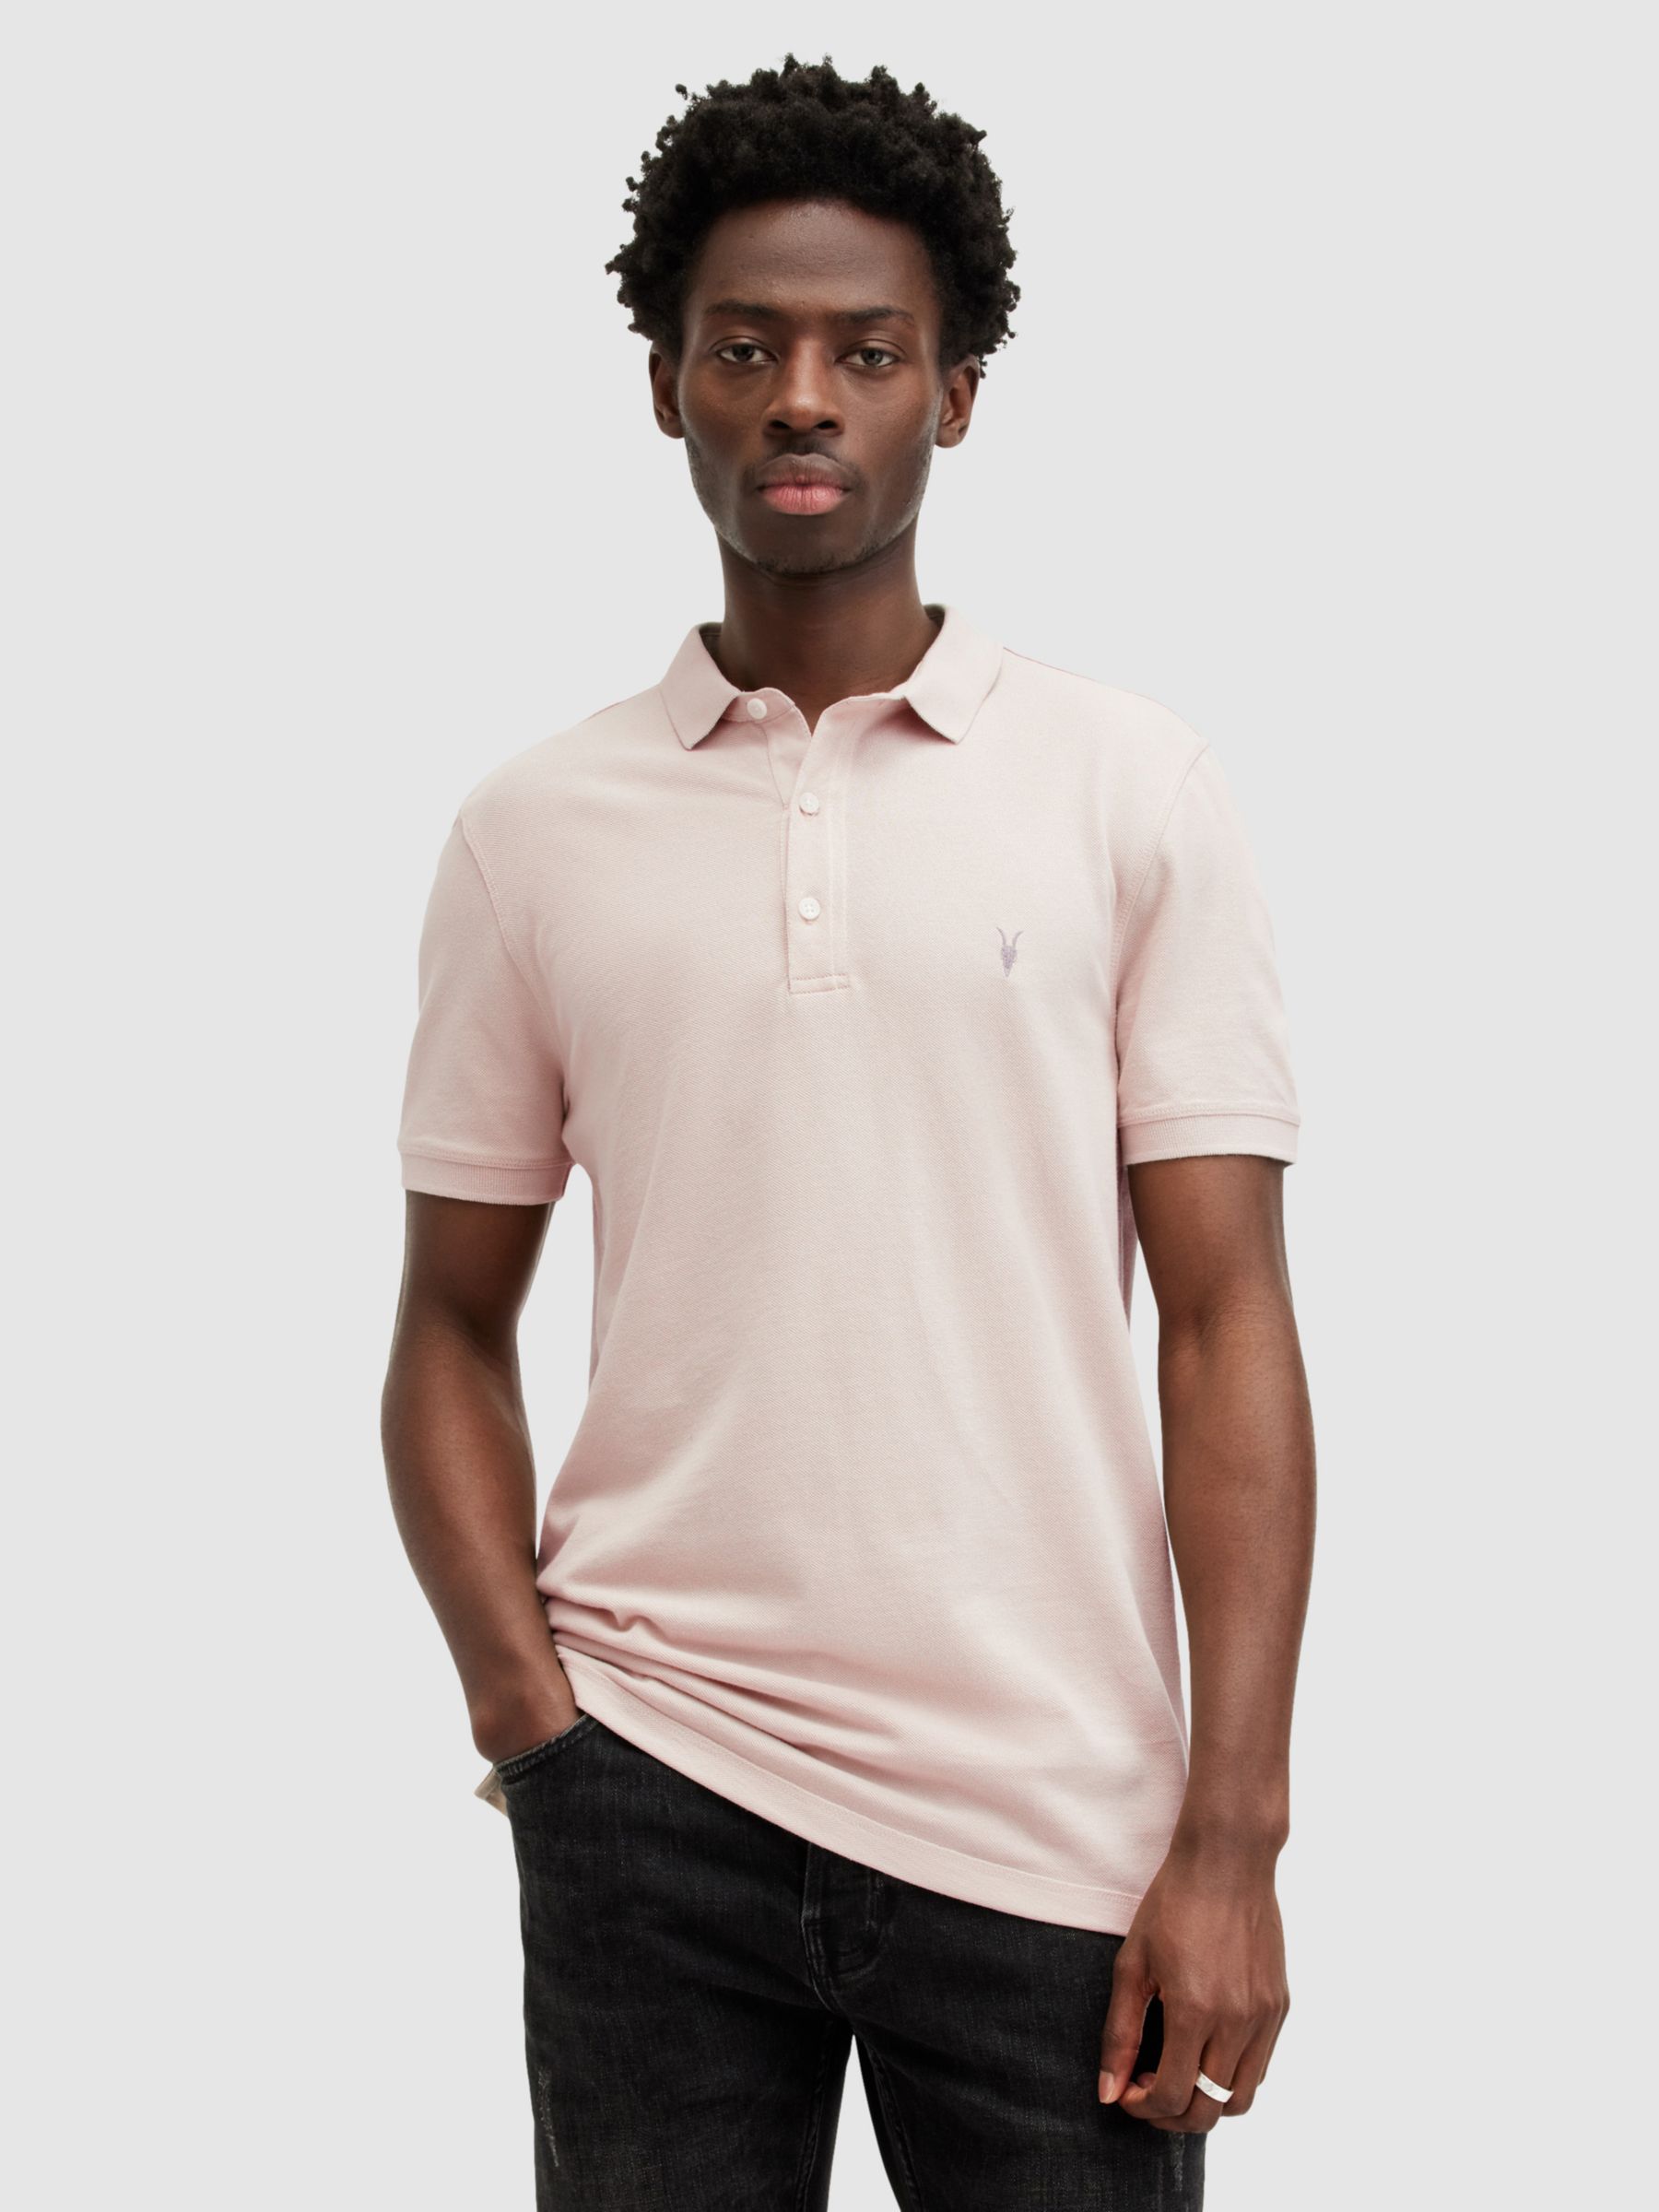 AllSaints Reform Organic Cotton Polo Shirt, Dust Taupe, L